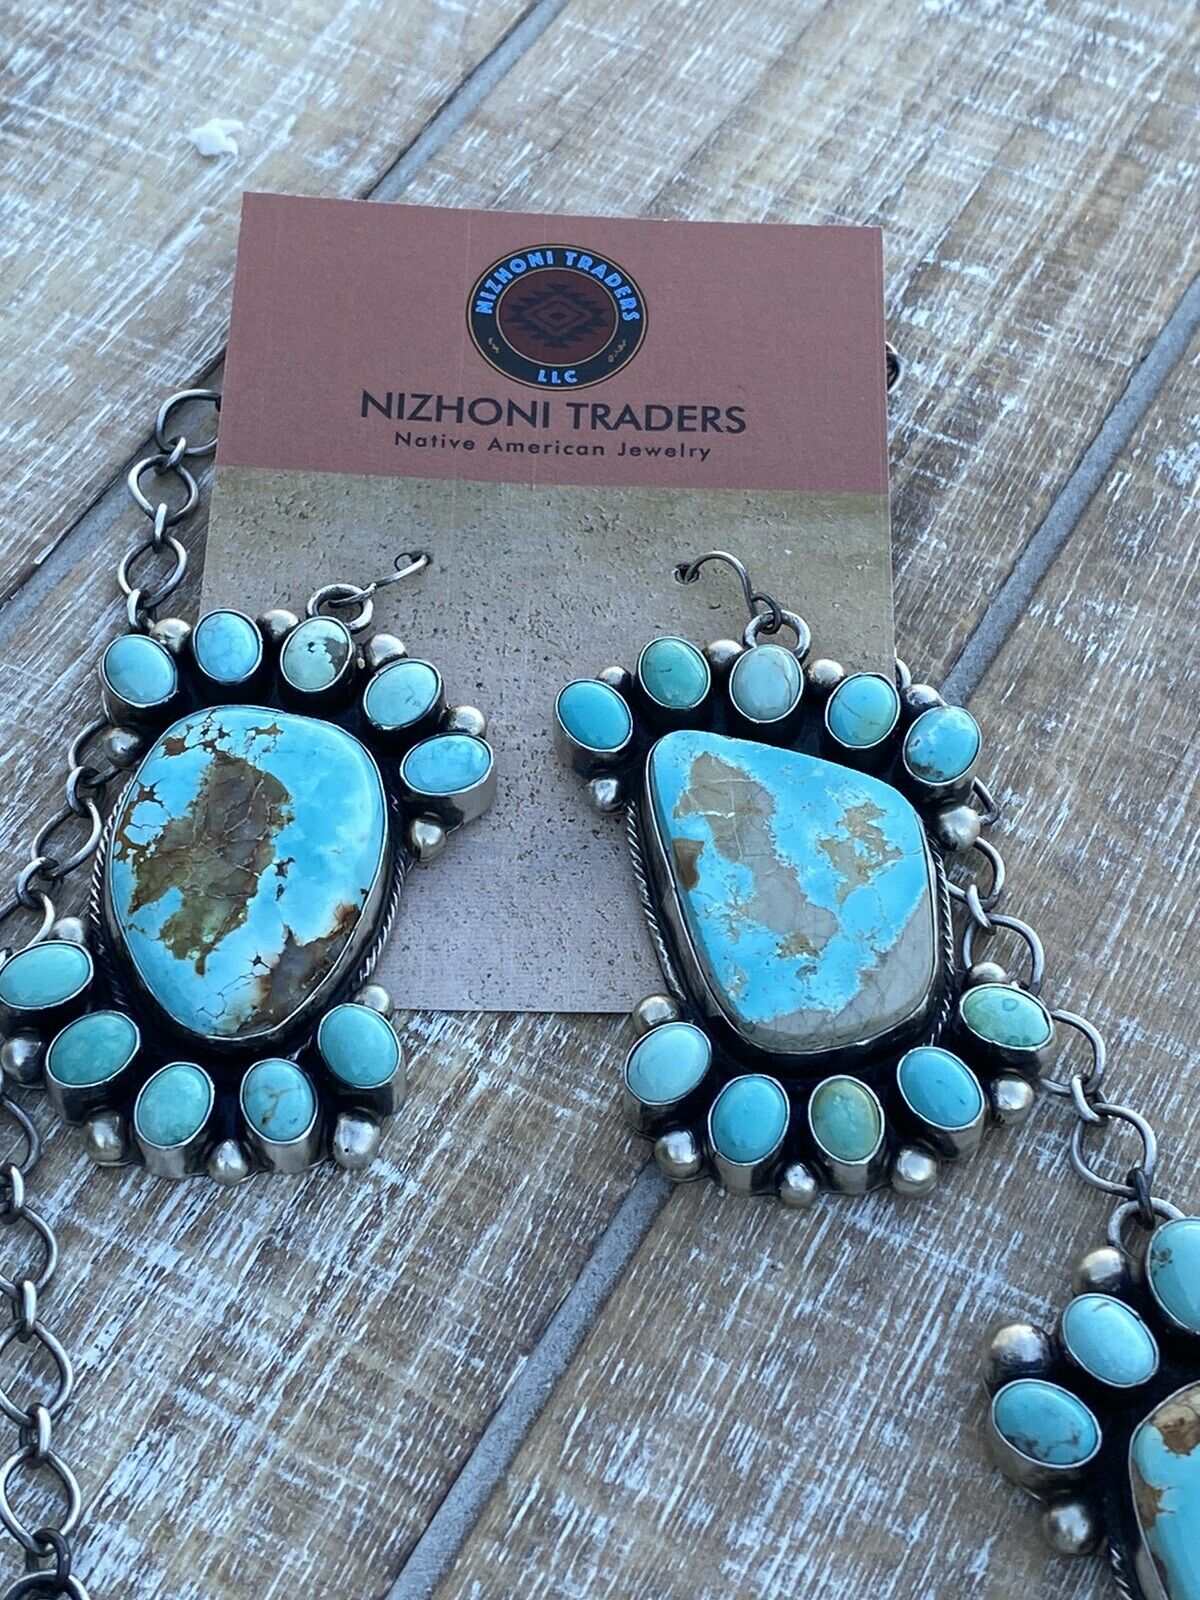 Carico Lake Turquoise Necklace Set By Kathleen Chavez Signed